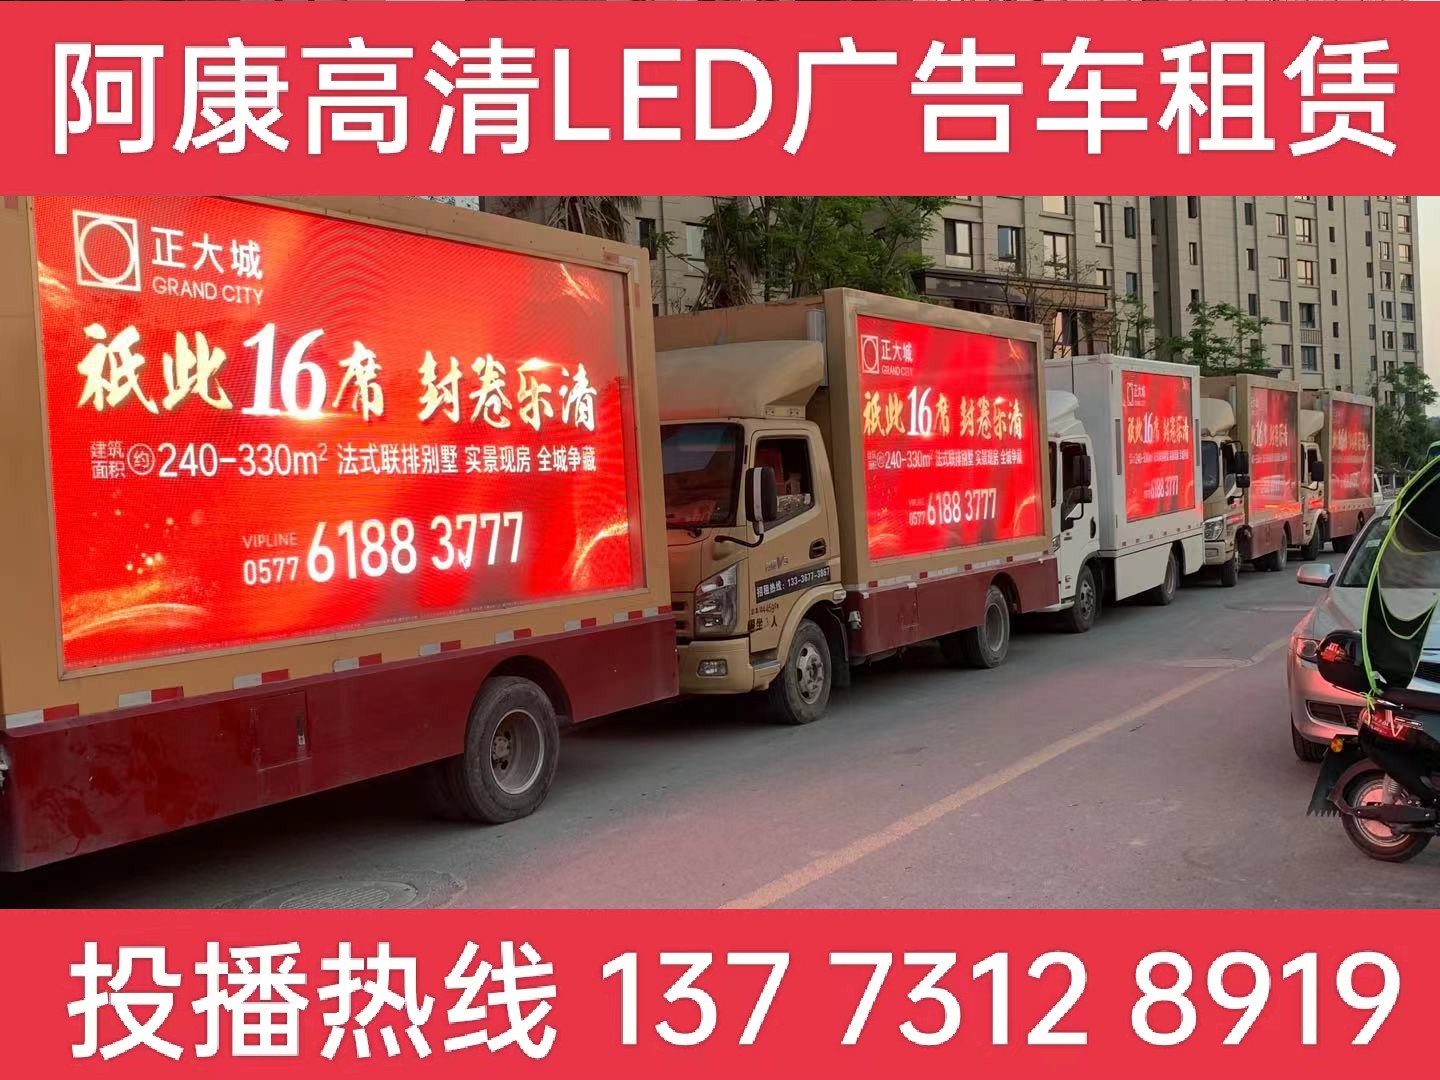  建邺区LED广告车出租